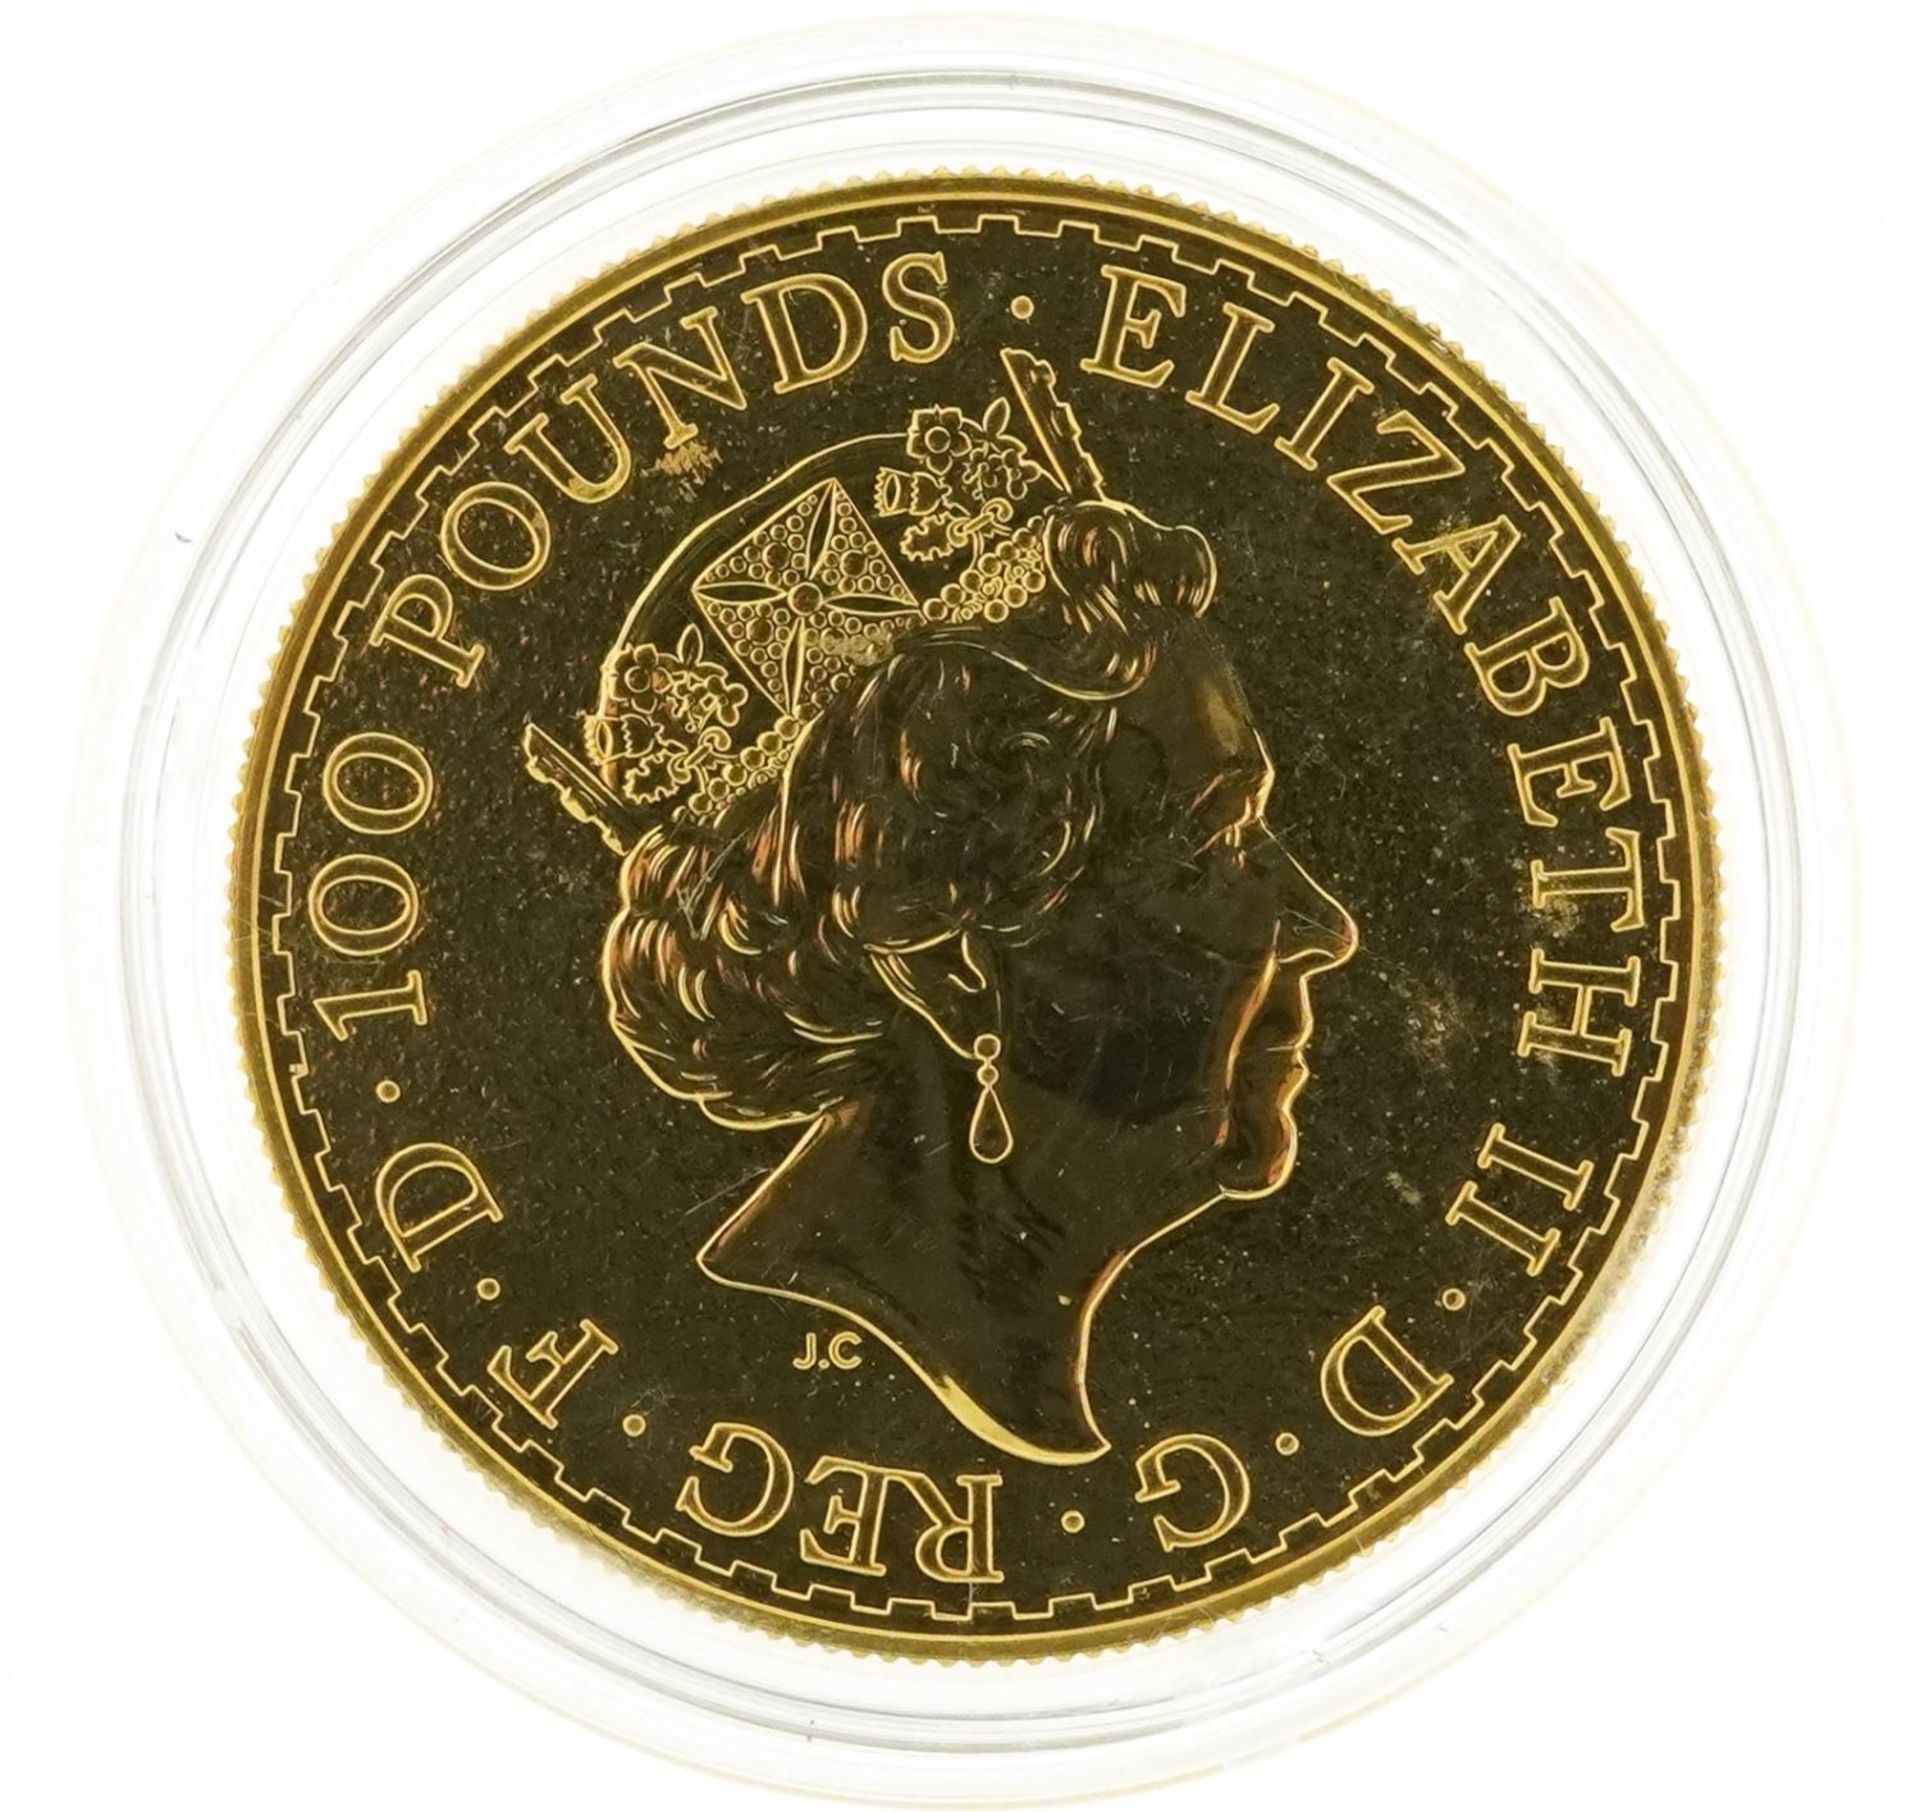 Elizabeth II 2017 Britannia one ounce fine gold one hundred pound coin - Bild 2 aus 2